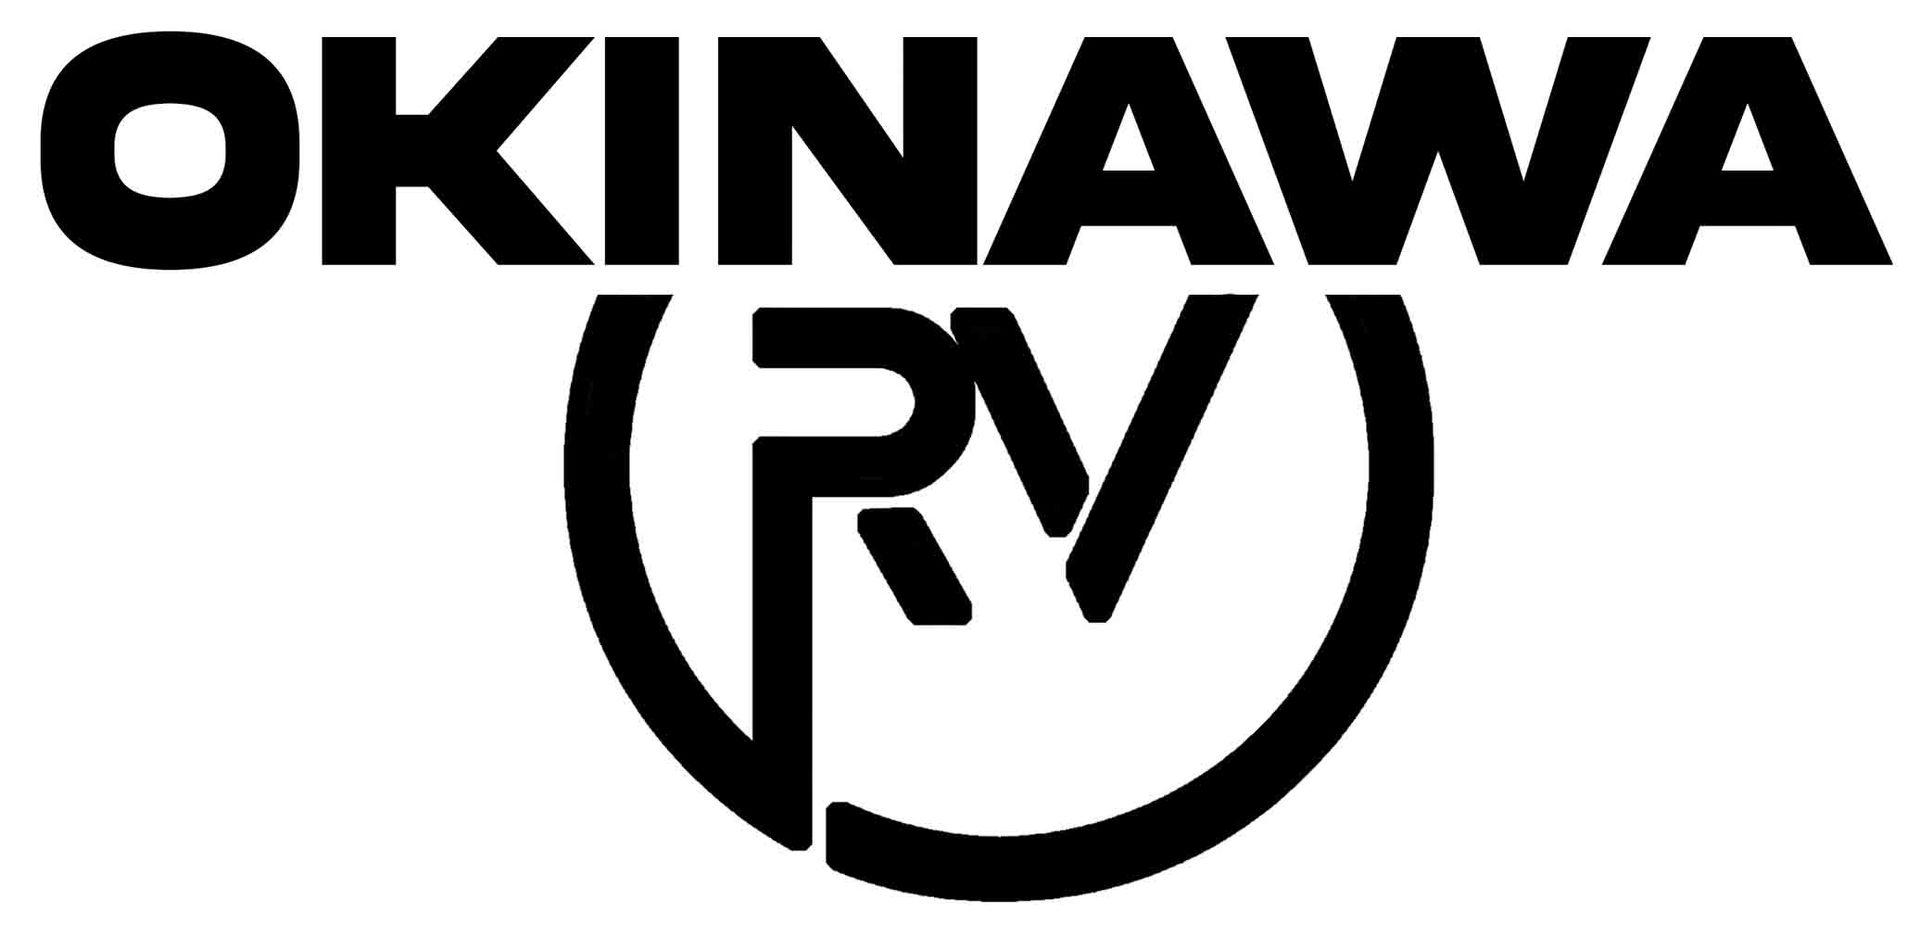 OkinawaRV - RV rental in Okinawa, Japan